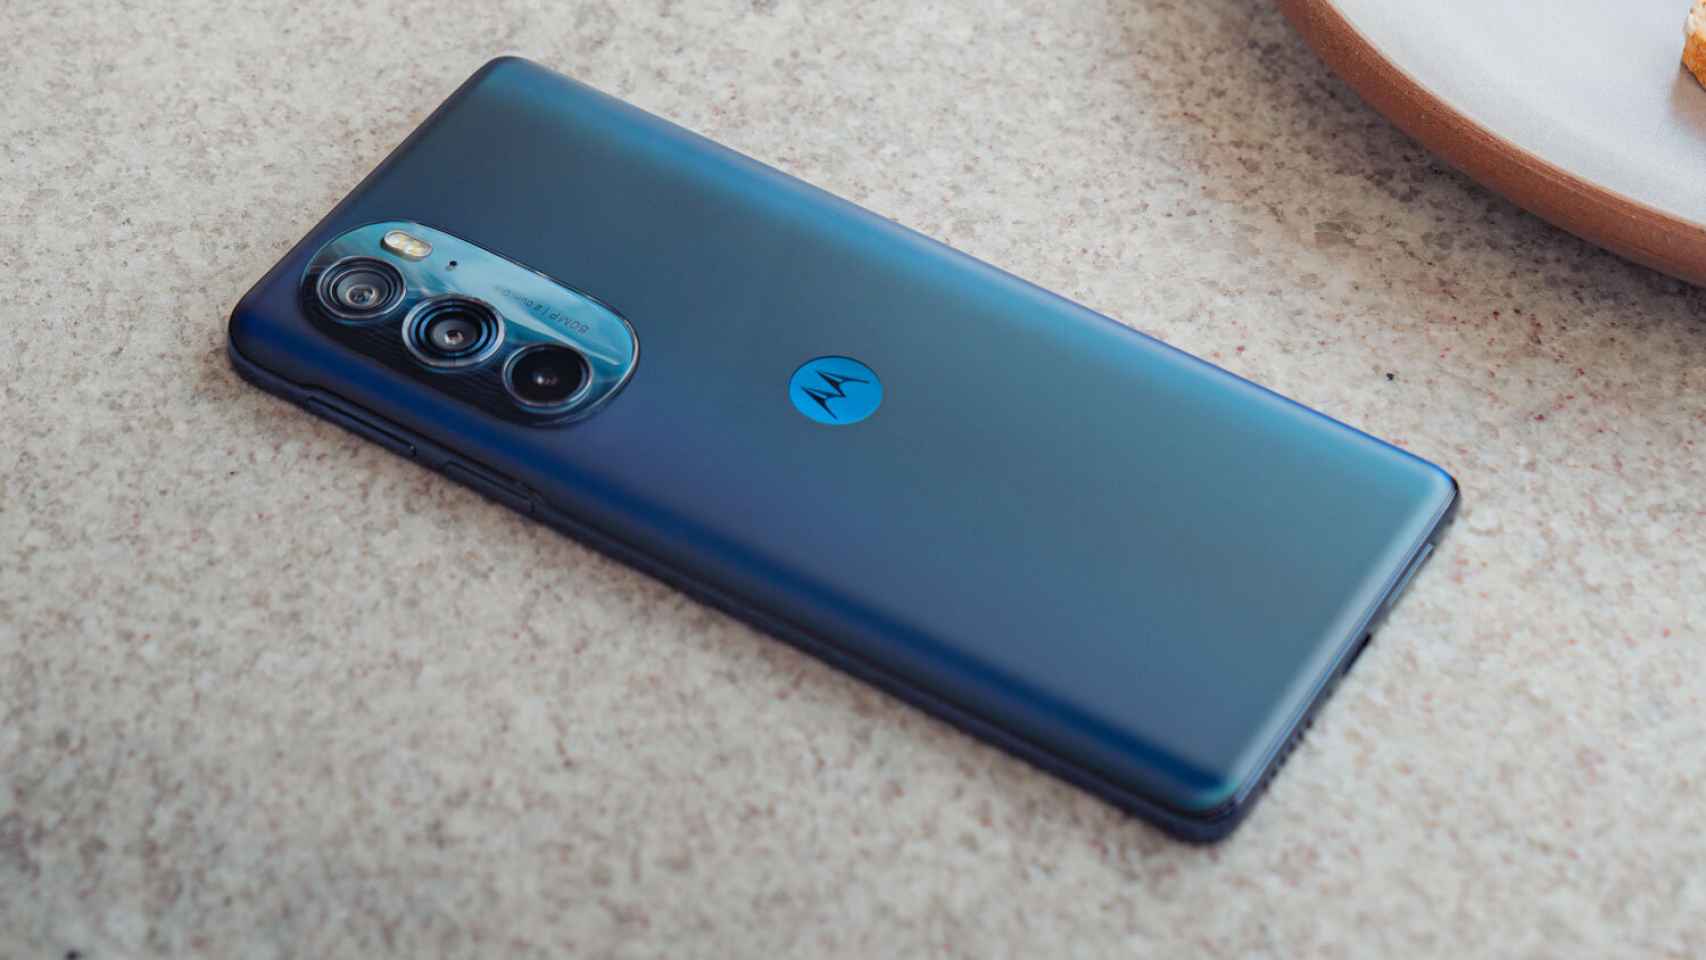 El nuevo Motorola Moto G200 tiene una pantalla de casi 7 pulgadas